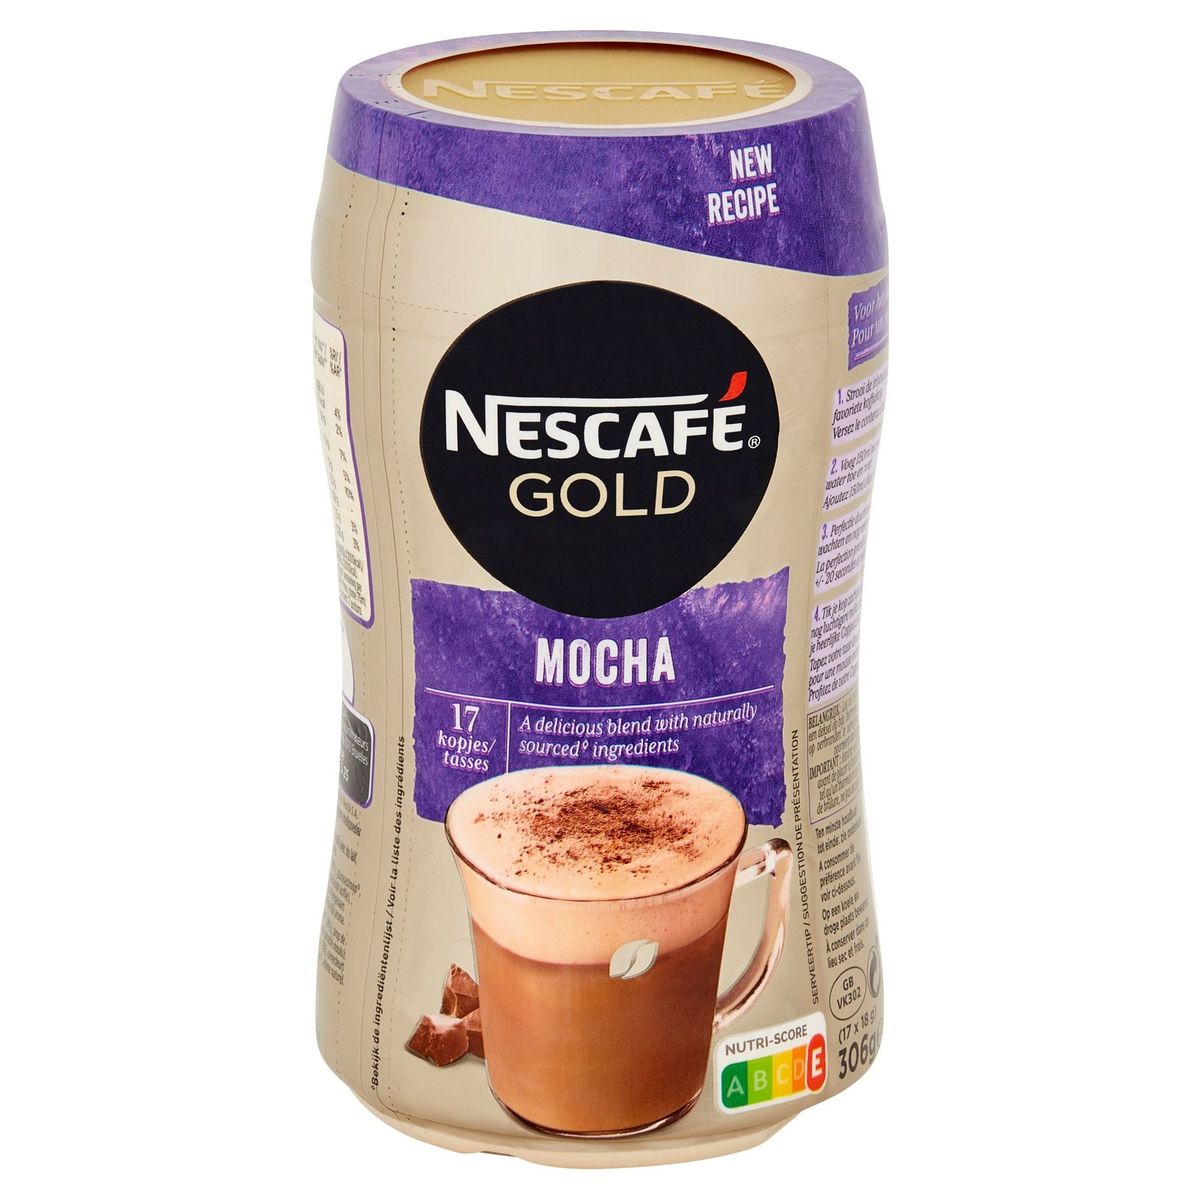 Nescafé Café CAPPUCCINO Chocolate Bocal 306 g